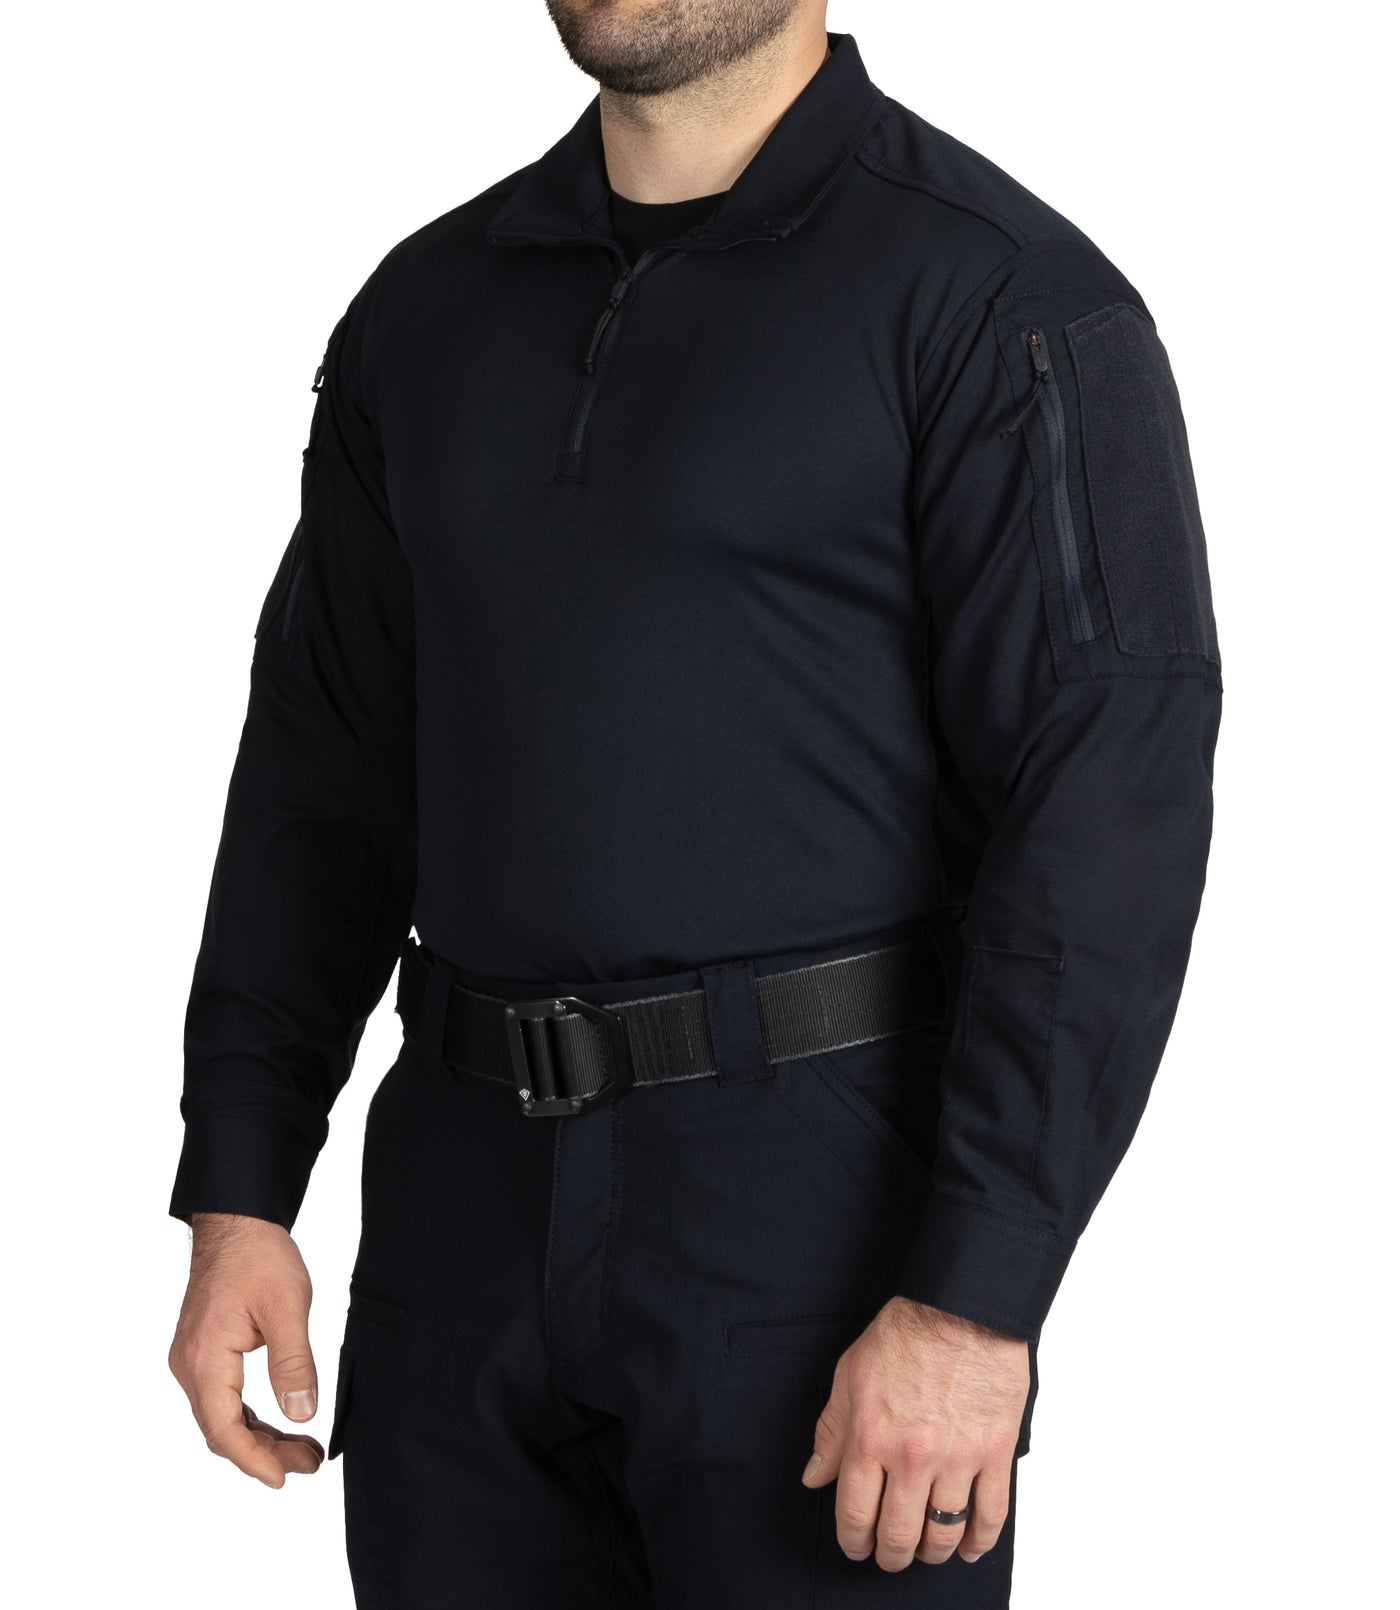 Men's V2 Responder Long Sleeve Shirt